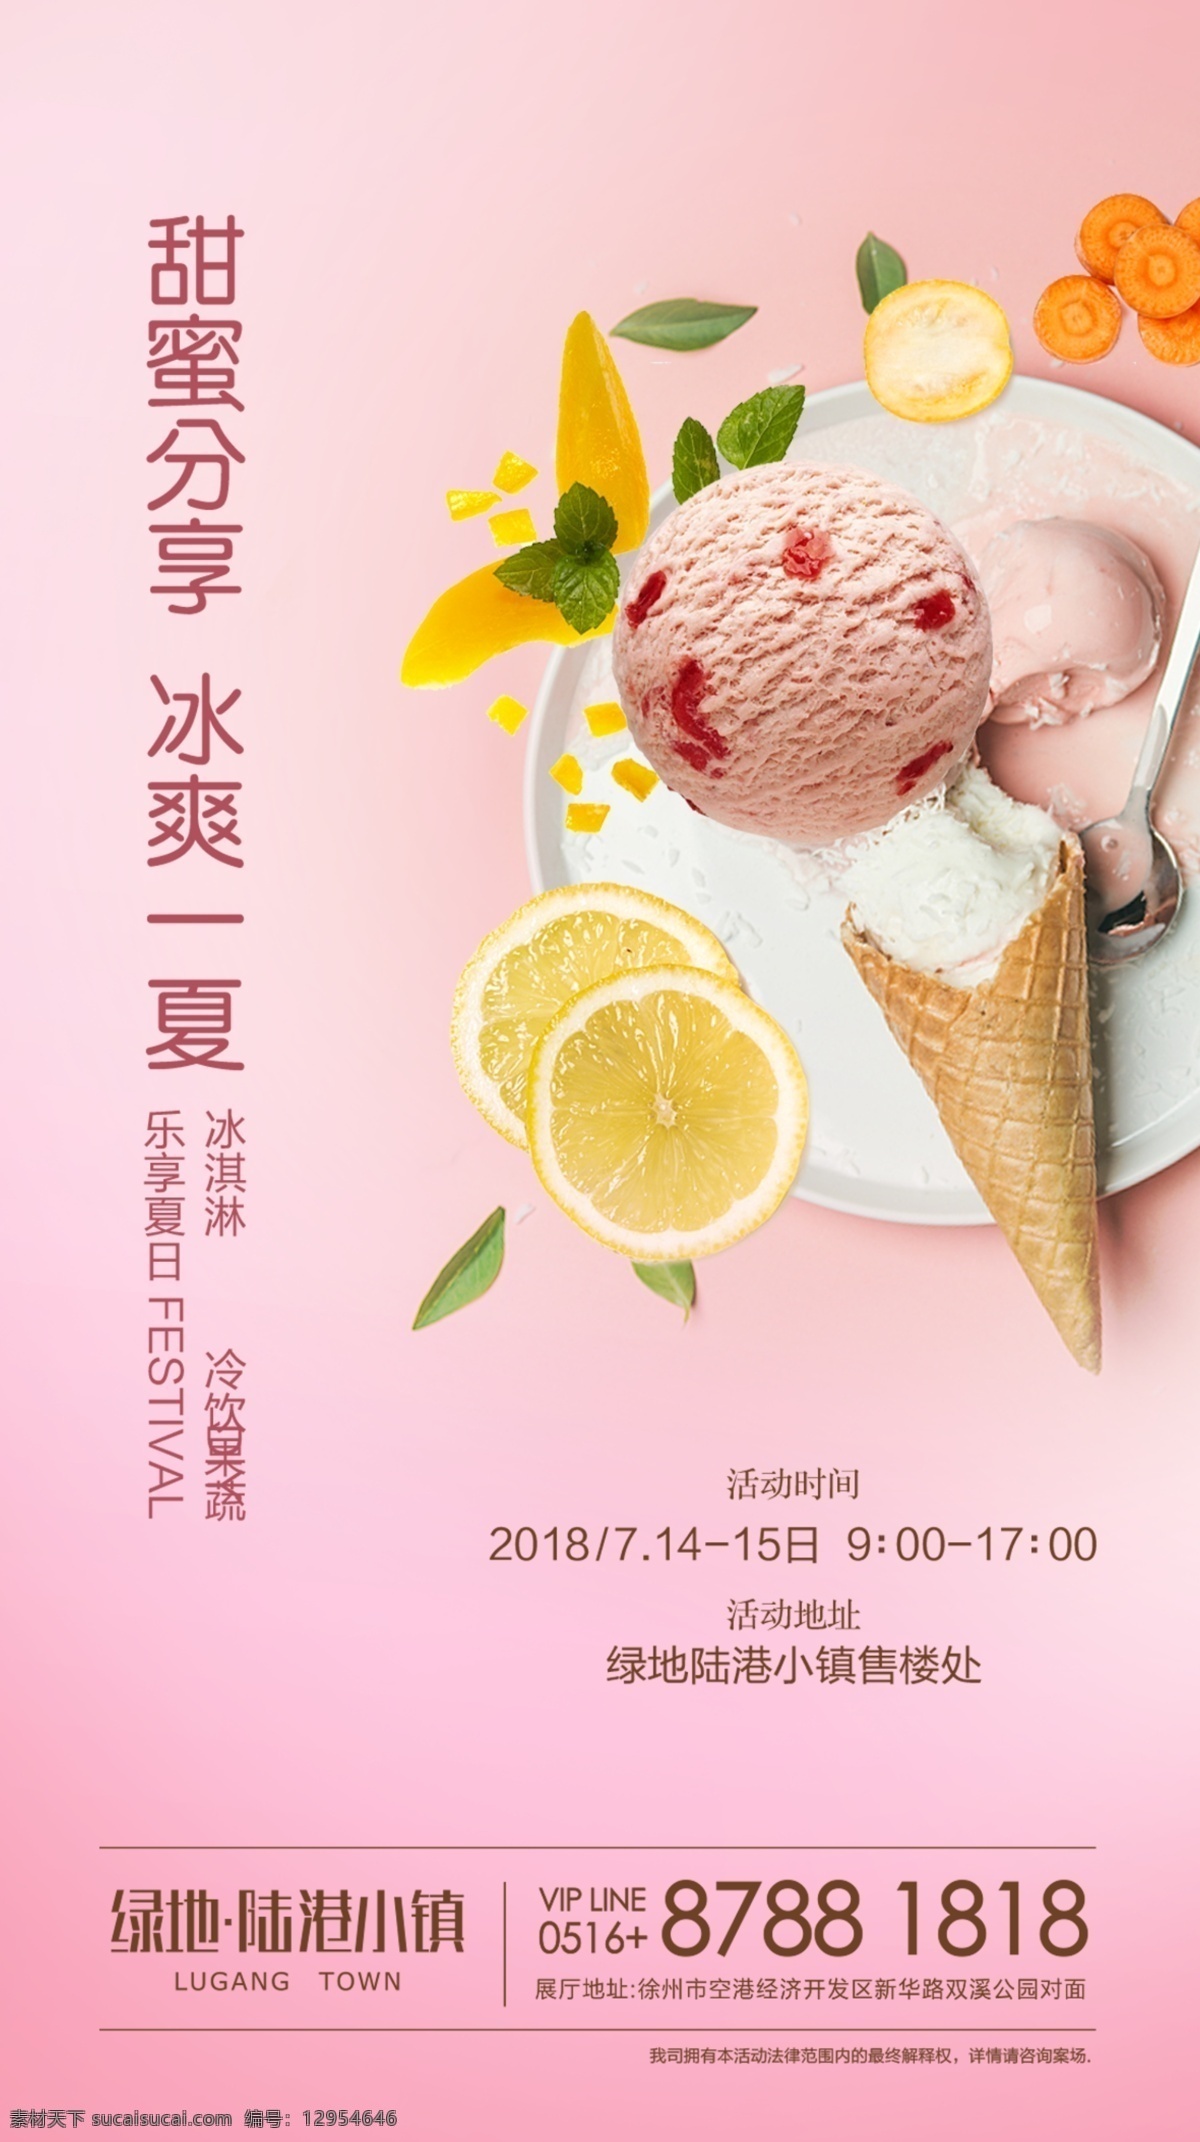 甜品 冰淇淋 水果 diy 活动 浪漫